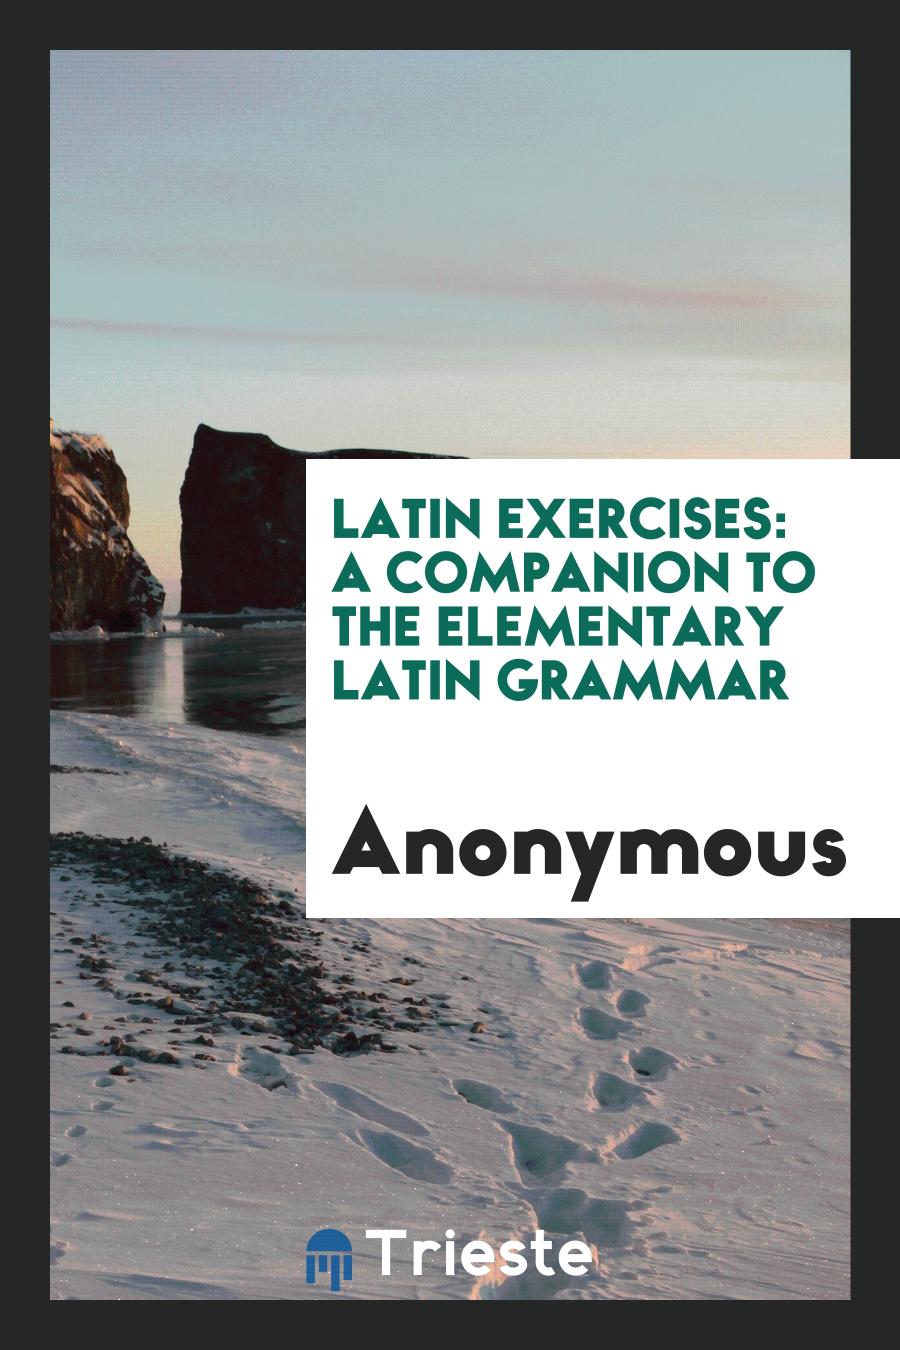 Latin exercises: A companion to the Elementary Latin grammar